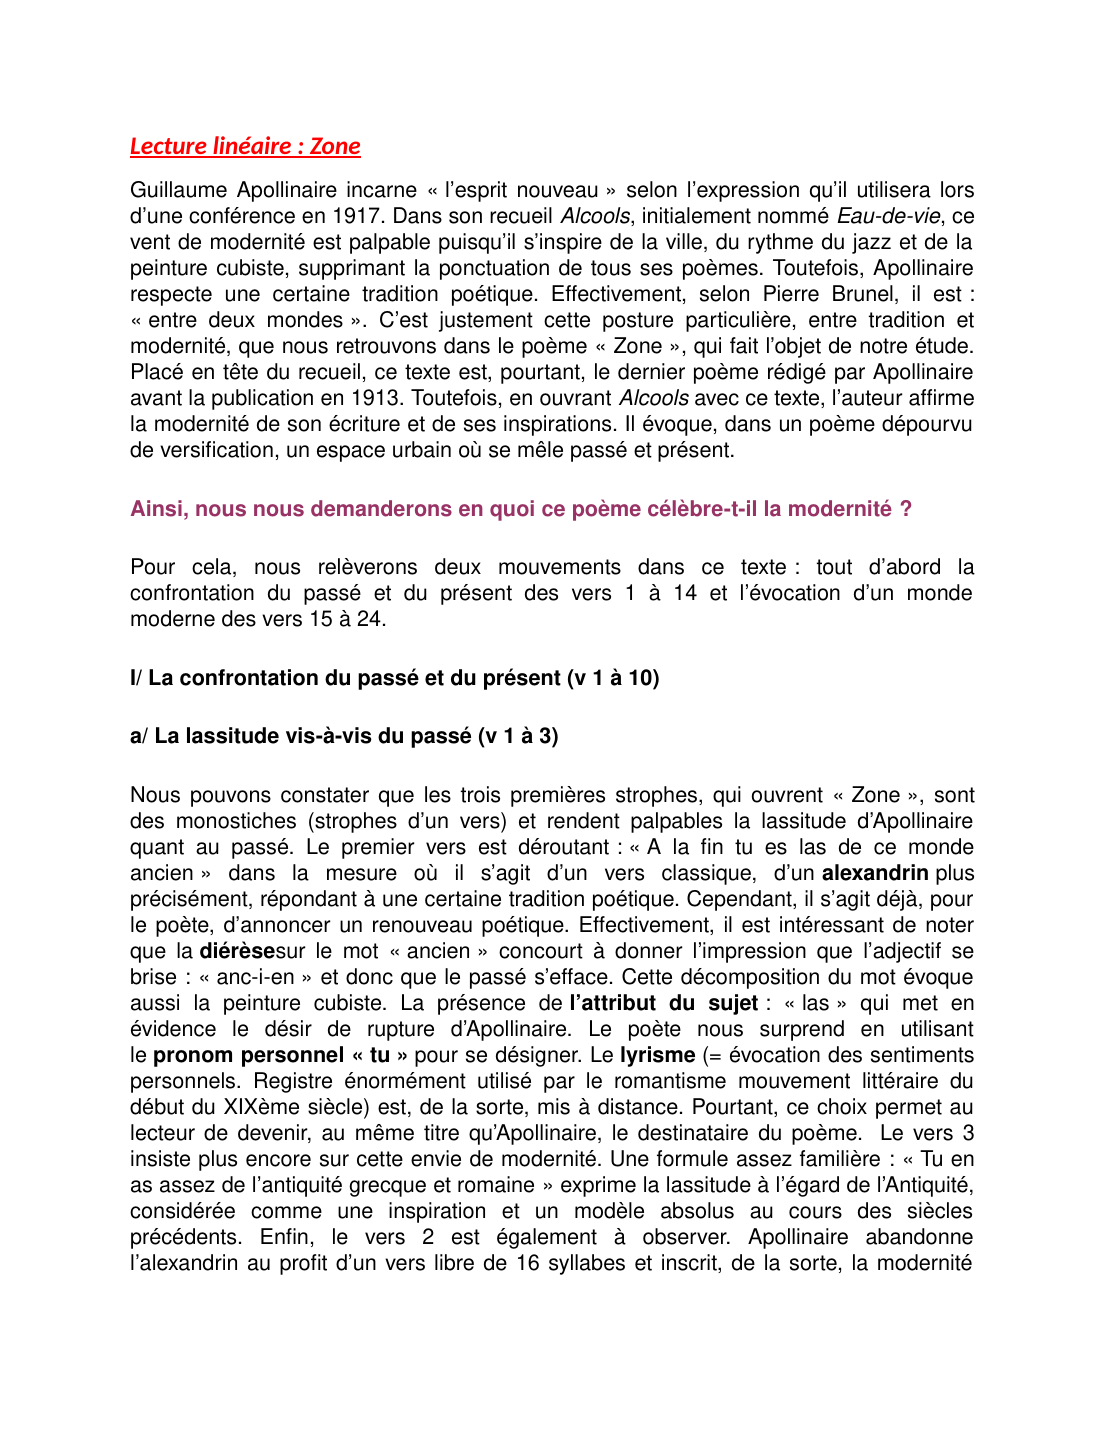 Prévisualisation du document analyse zone de Guillaume Apollinaire